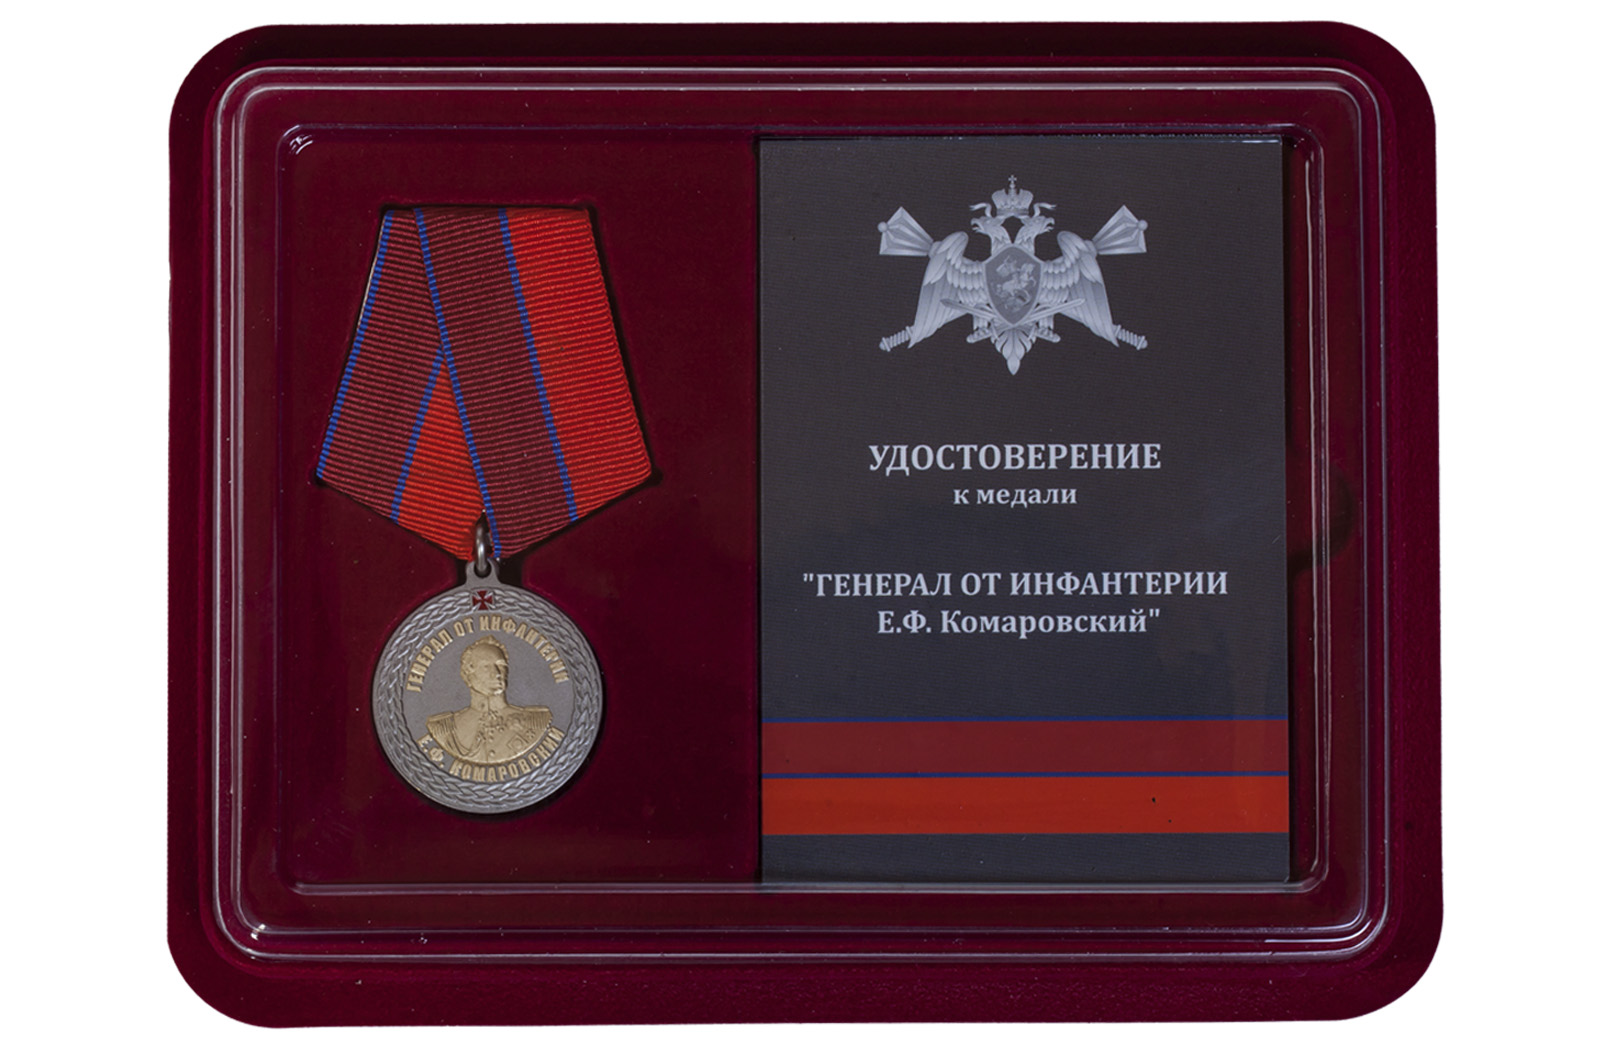 Купить медаль с символикой Росгвардии Генерал от инфантерии Е.Ф. Комаровский оптом выгодно